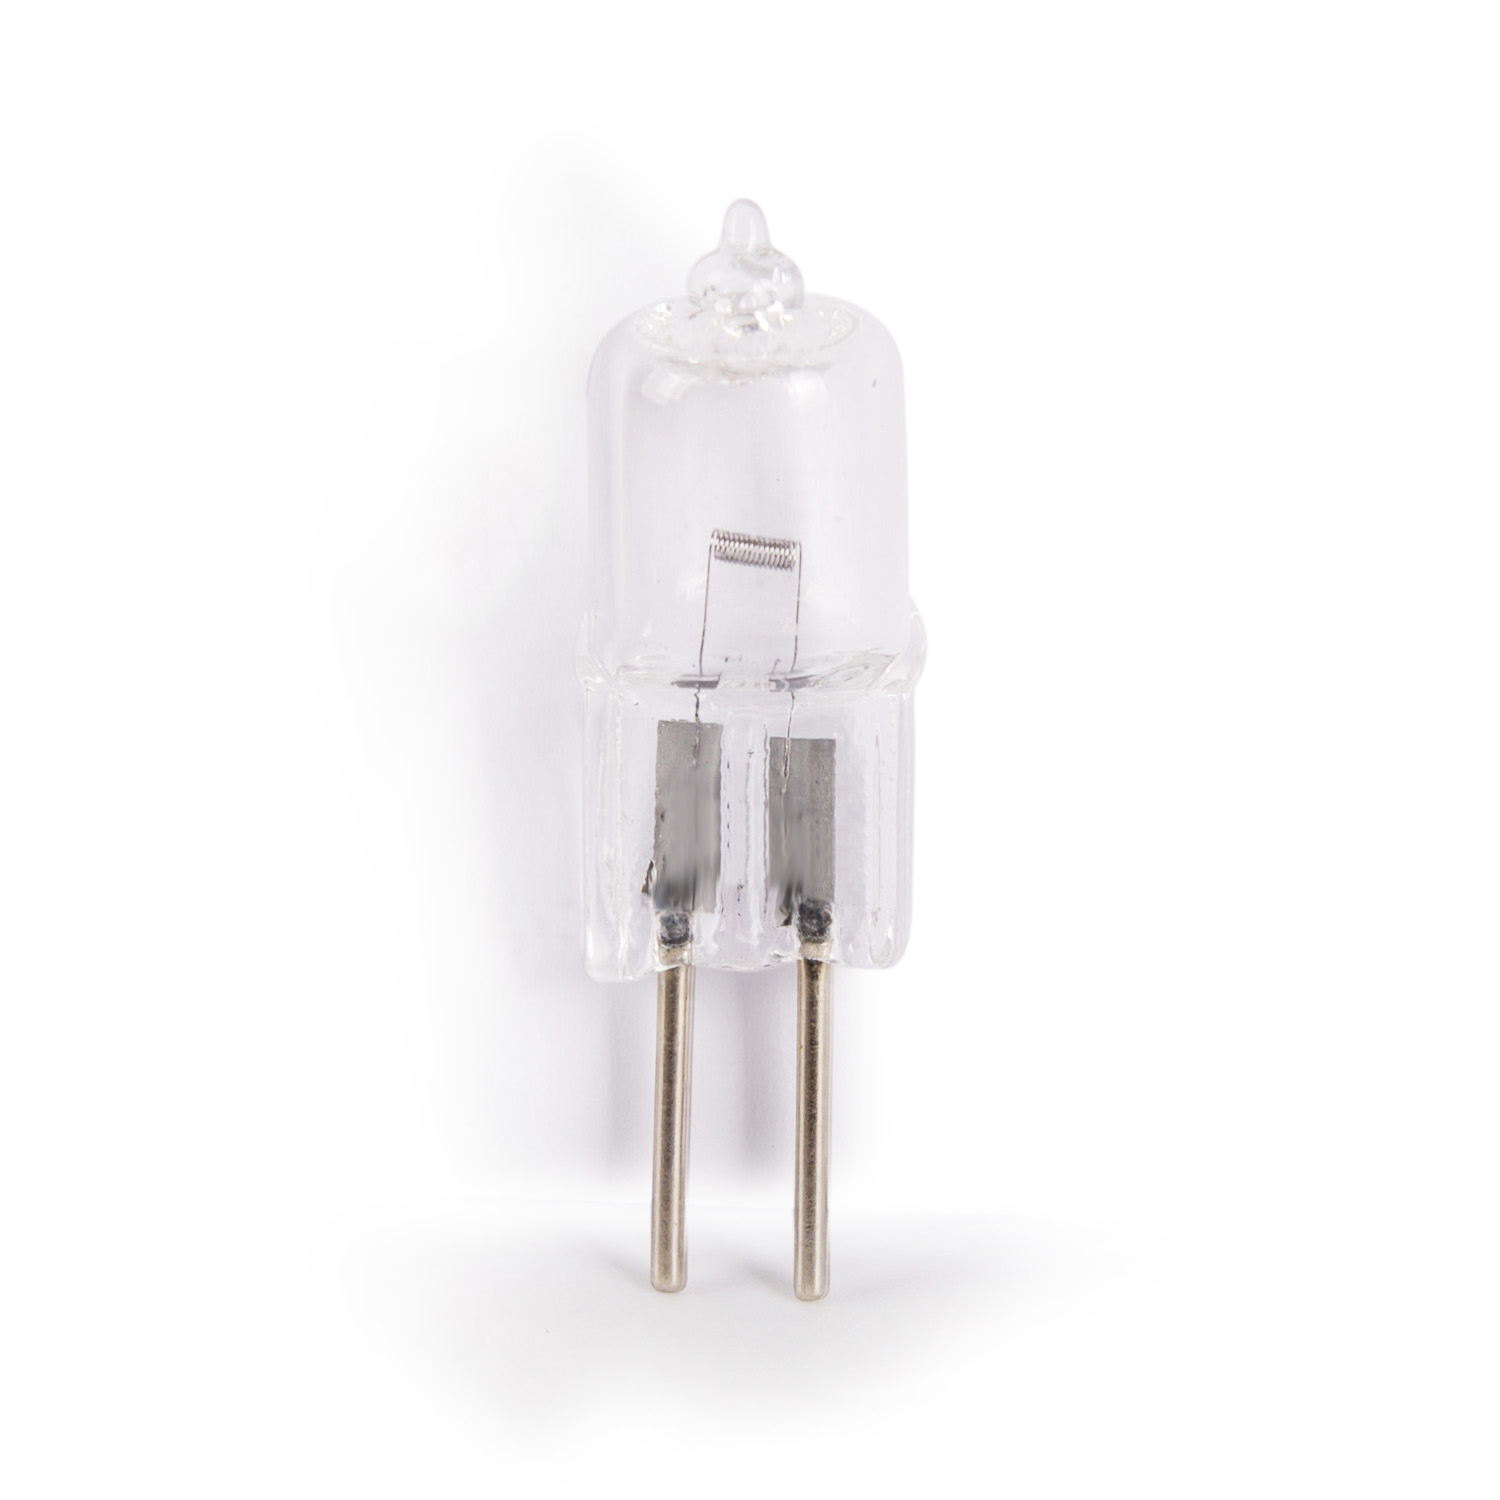 LT03041 12v 60w GY6.35 dental unit bulb 